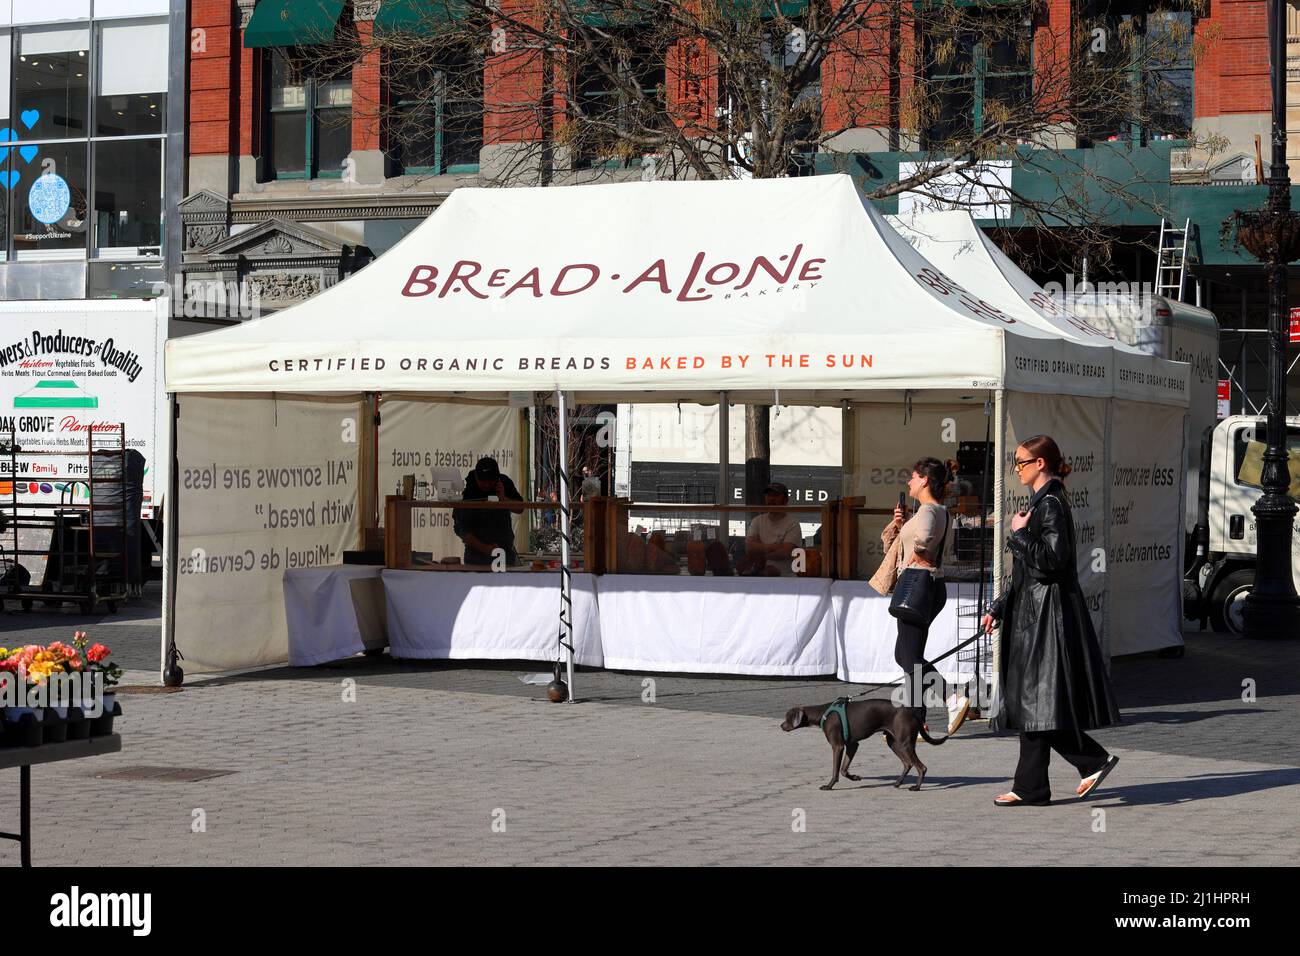 La tente du fournisseur de boulangerie Bread seul à Union Square Greenmarket, New York, NY. Banque D'Images